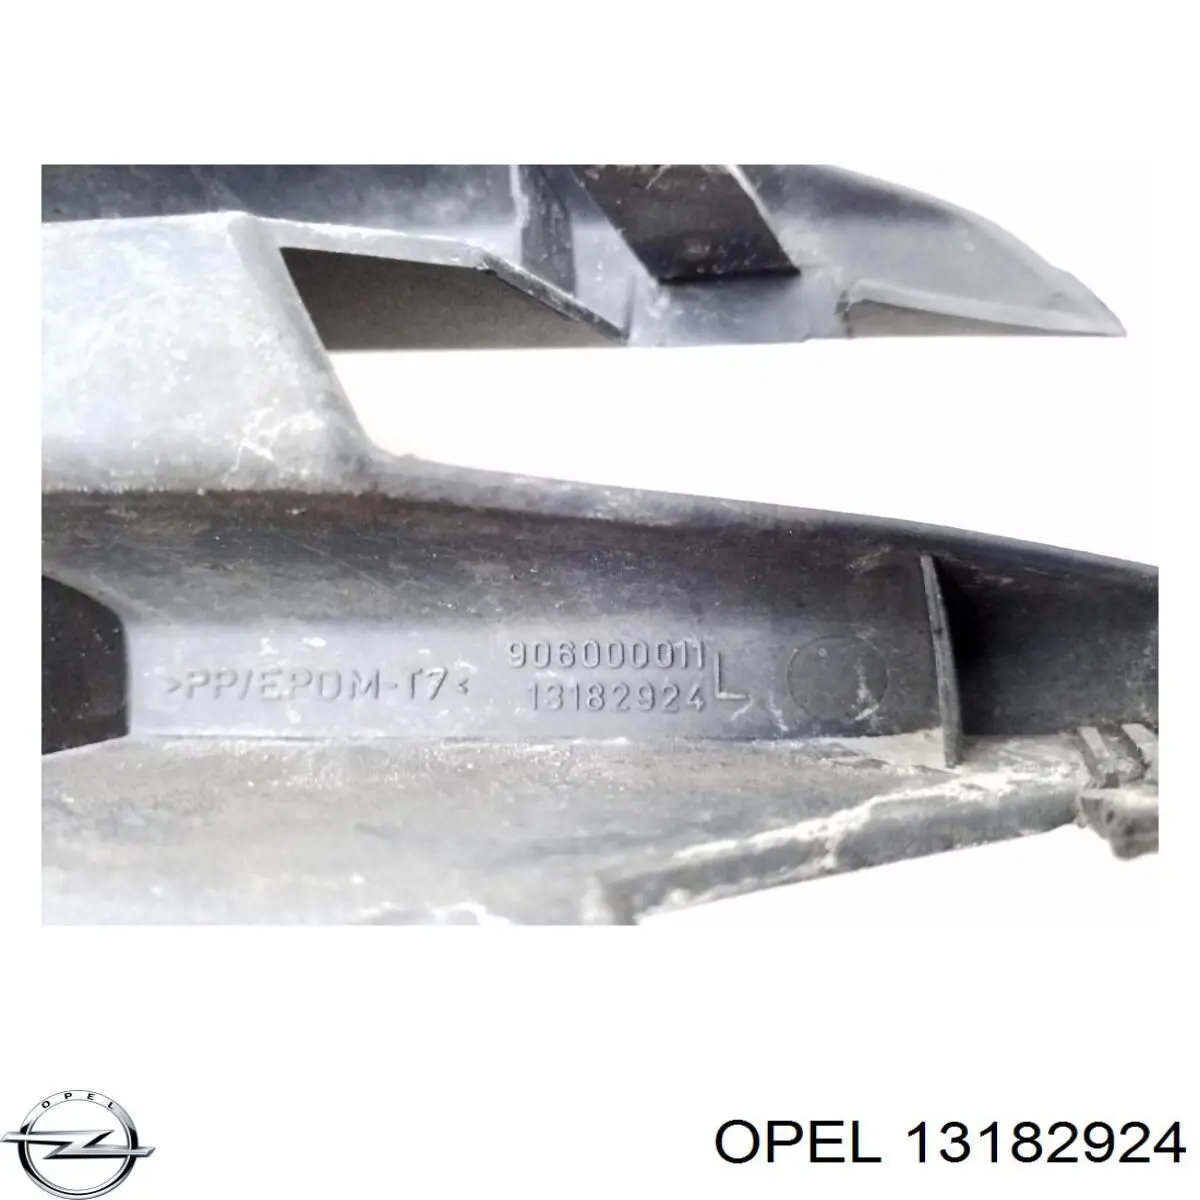 13182924 Opel rejilla del parachoques delantera izquierda